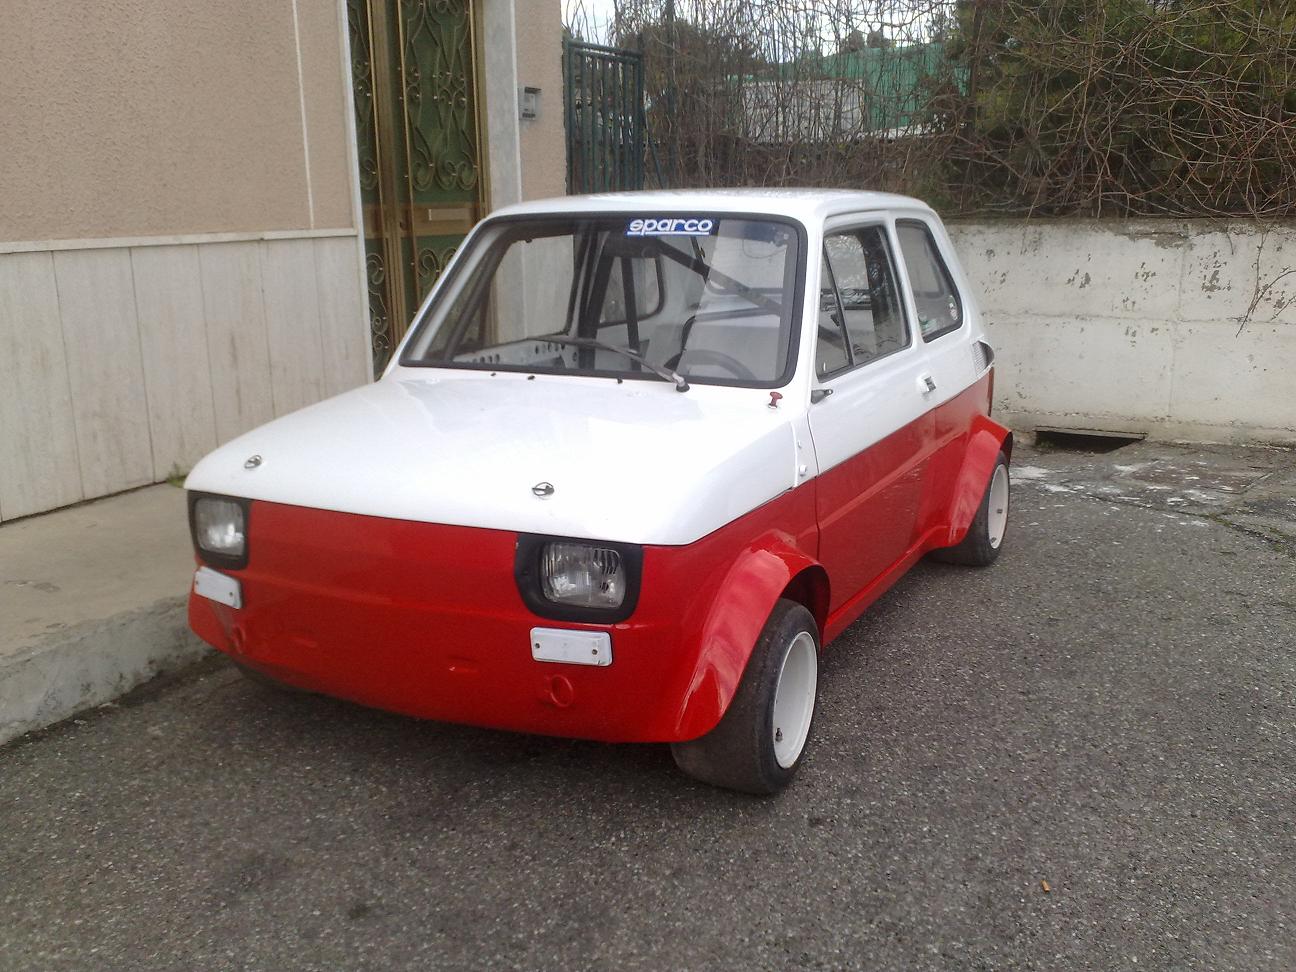 Vendo alfa romeo gta replica giannini Fiat 500 126 gr 2